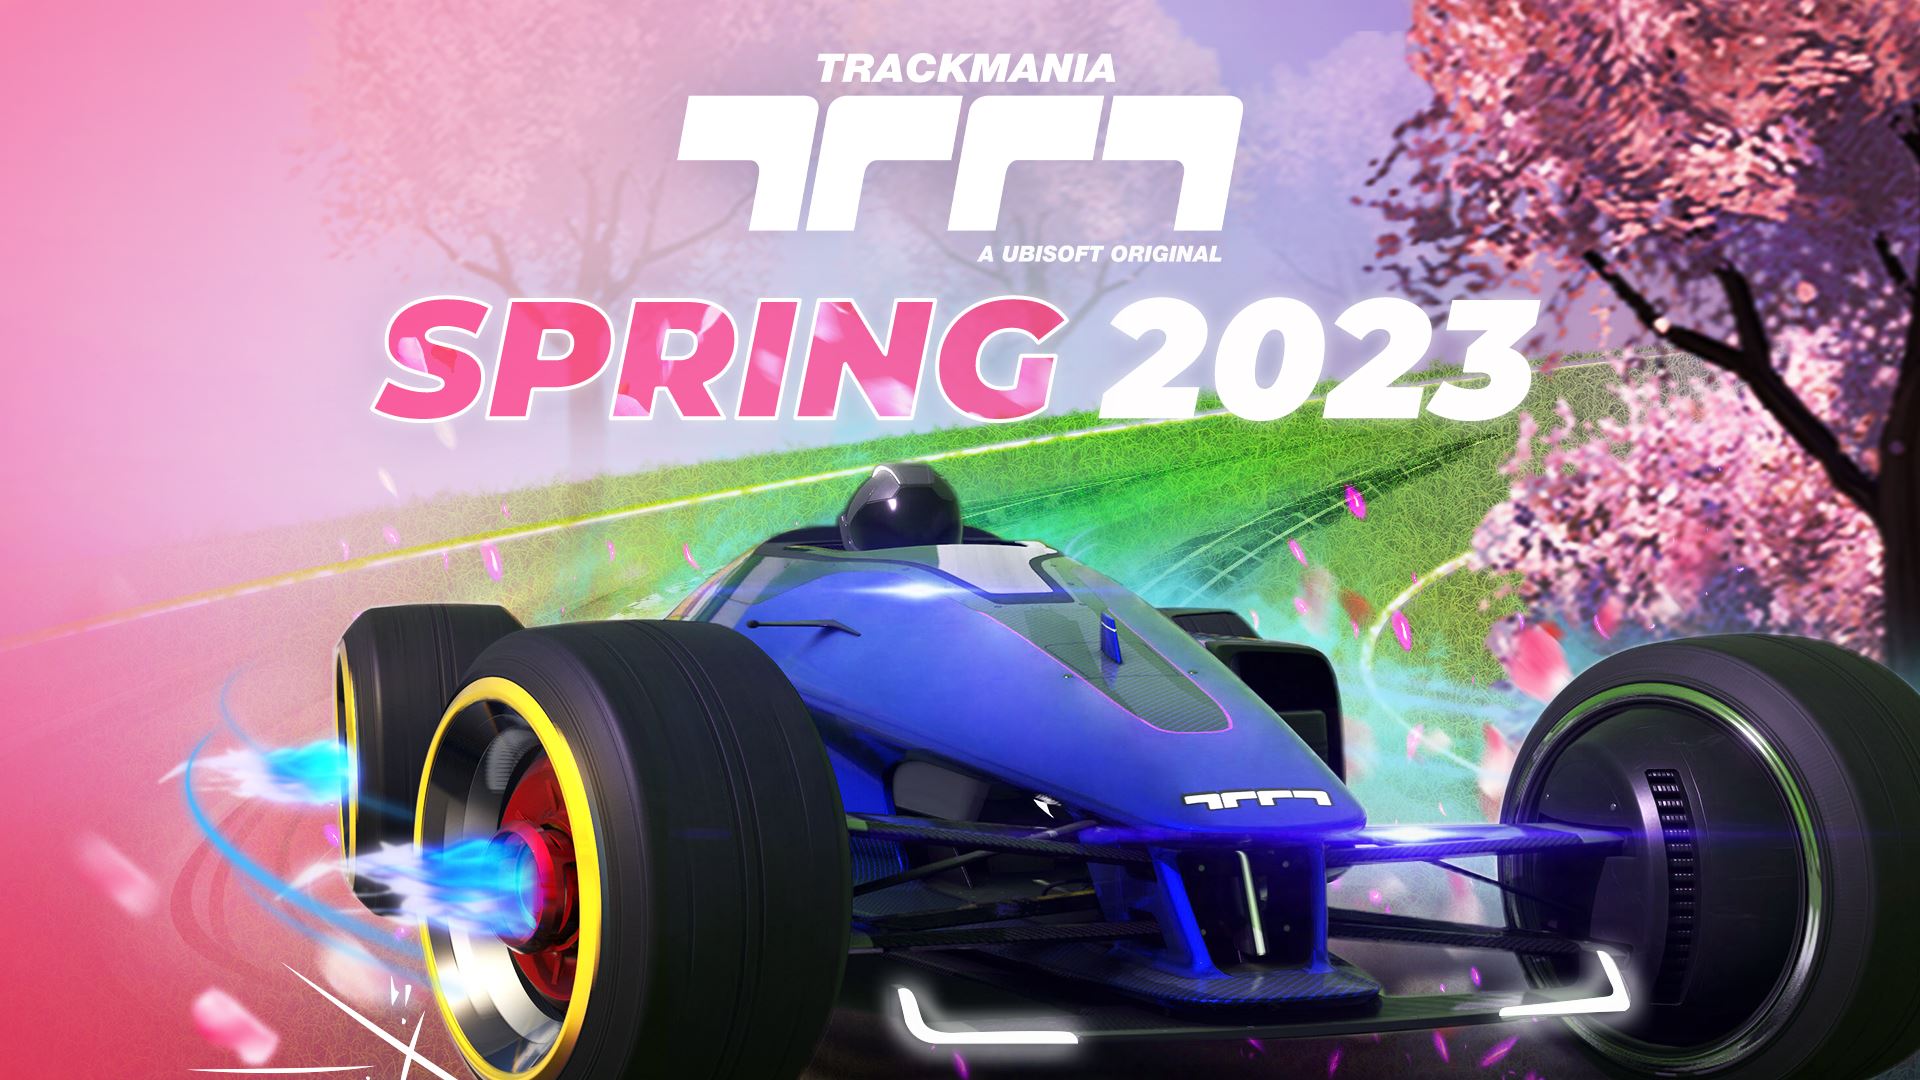 แคมเปญ Trackmania Spring 2023 เปิดให้เล่นฟรีวันที่ 1 เม.ย. ซีซันใหม่ประกอบด้วยสนามแข่งเพิ่มเติม 25 แทร็คและคอนเทนต์เพิ่มเติม ปูทางสู่การเปิดตัวคอนโซลในอนาคต